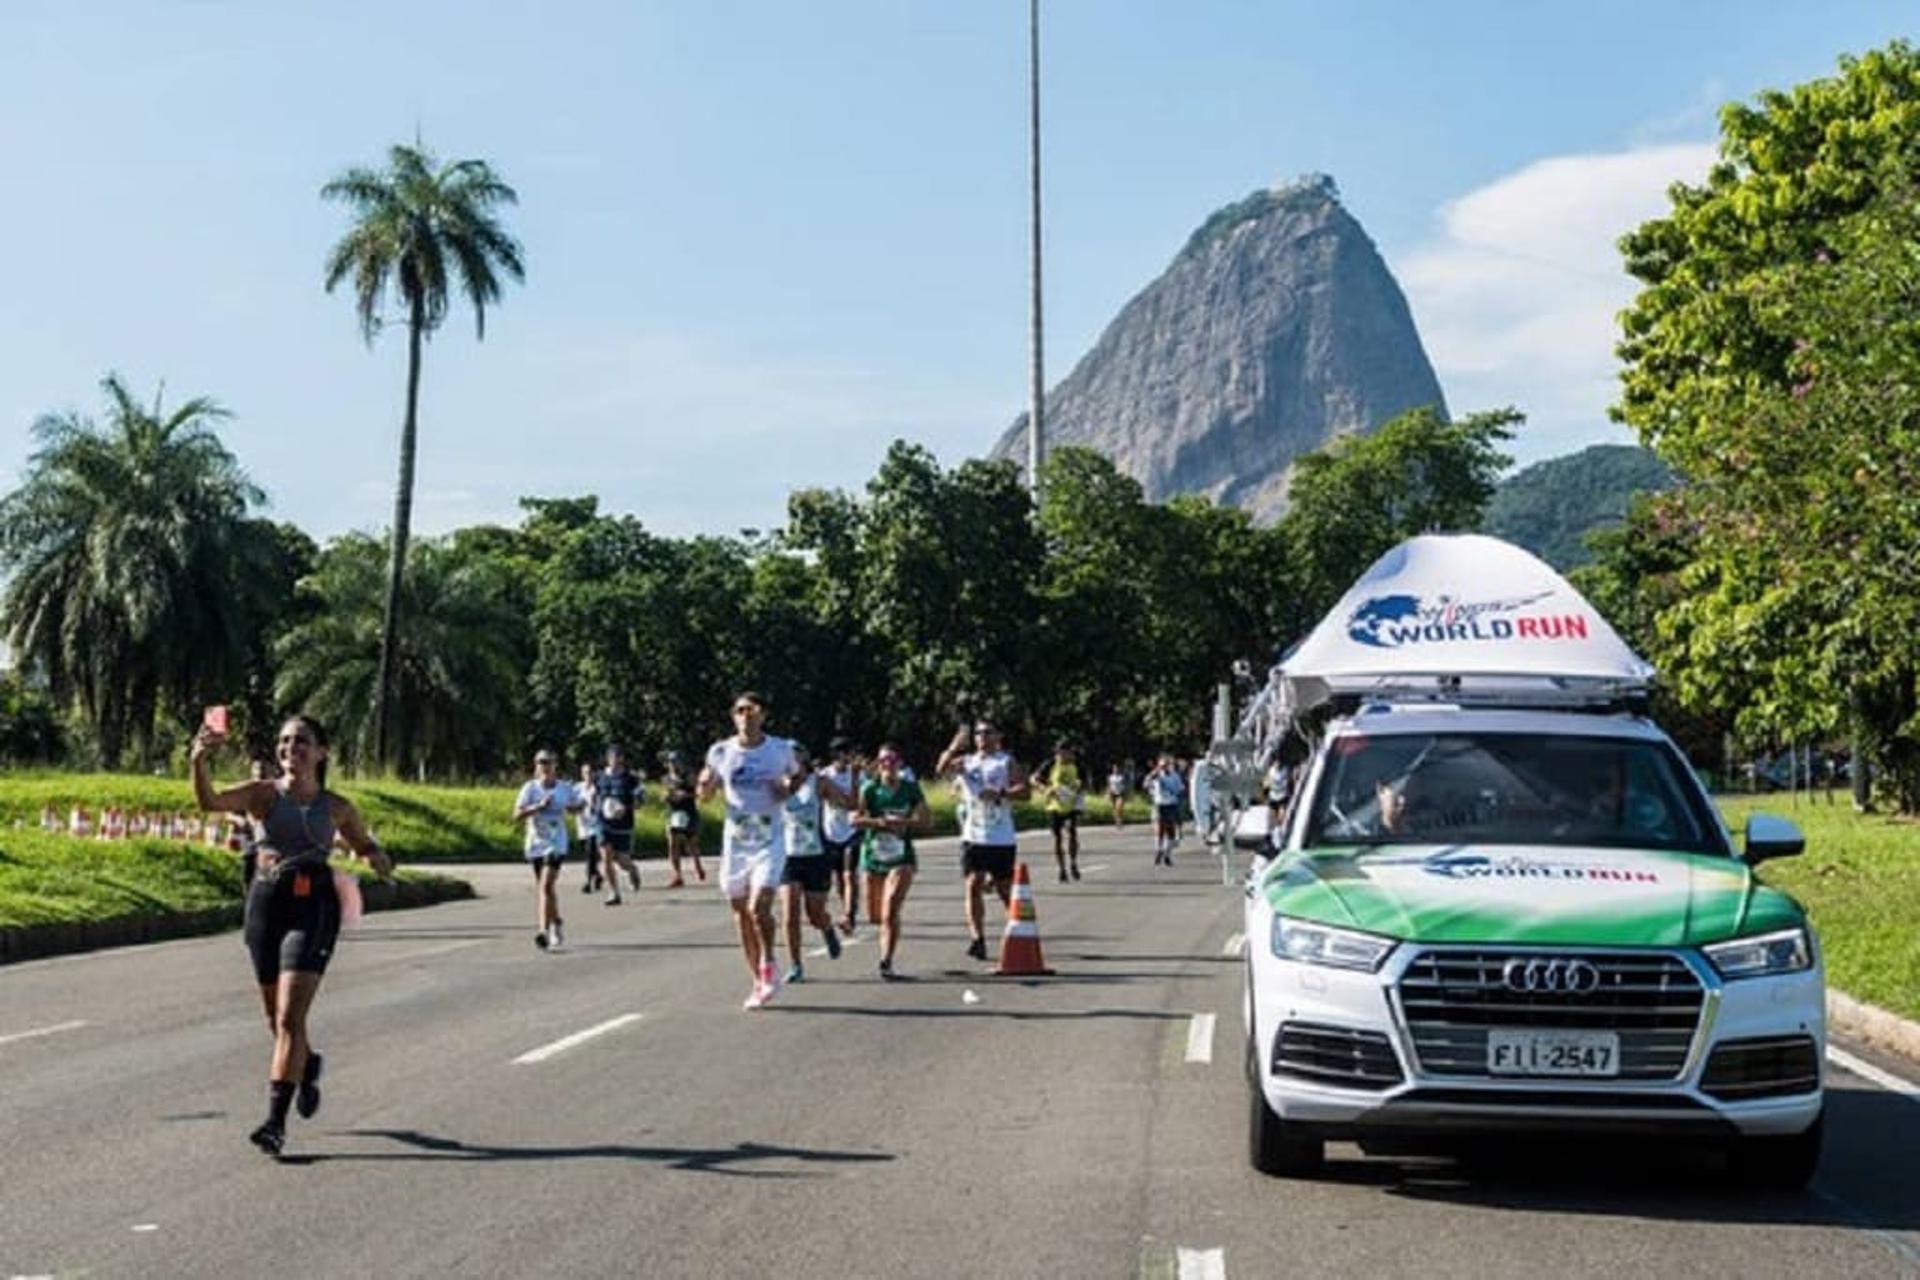 Catcher Car no Aterro do Flamengo durante da Wings For Life World Run no Rio de Janeiro. (Divulgação)